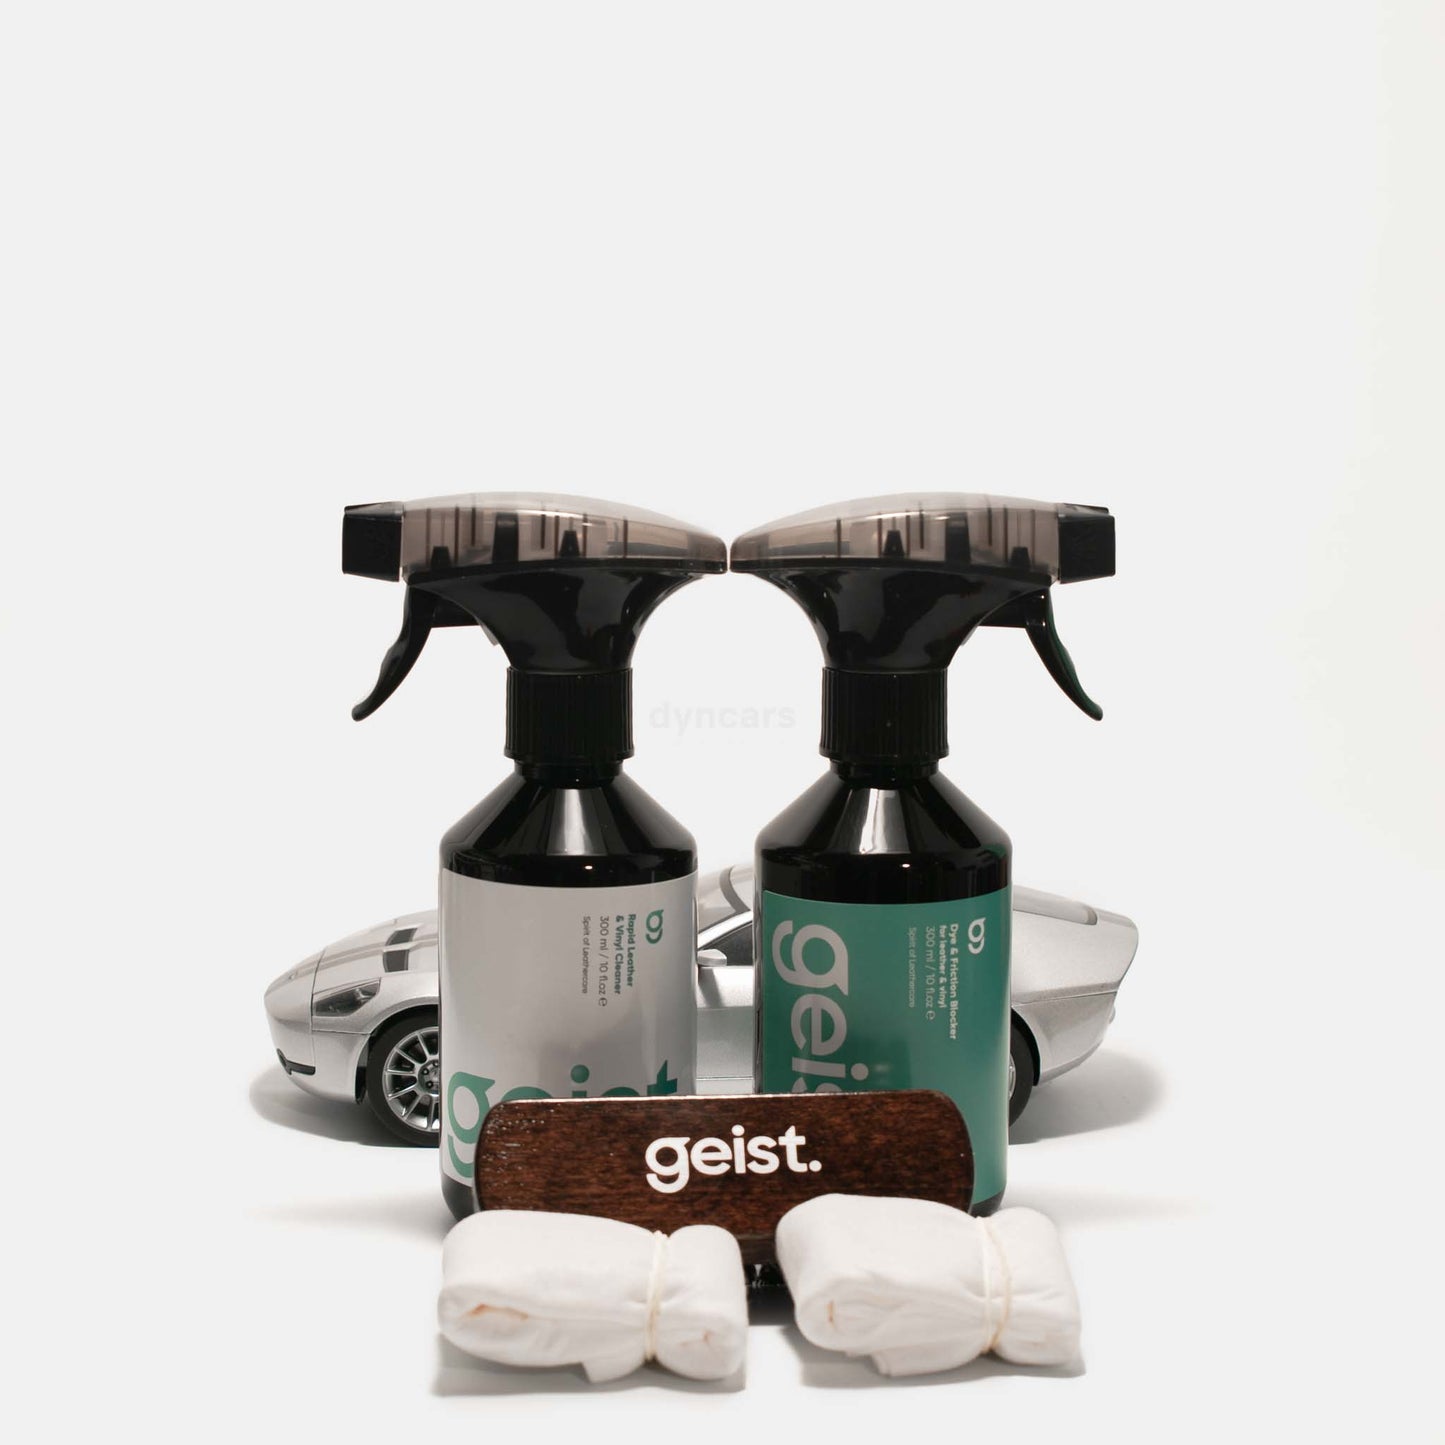 Geist - 3 minus care kit